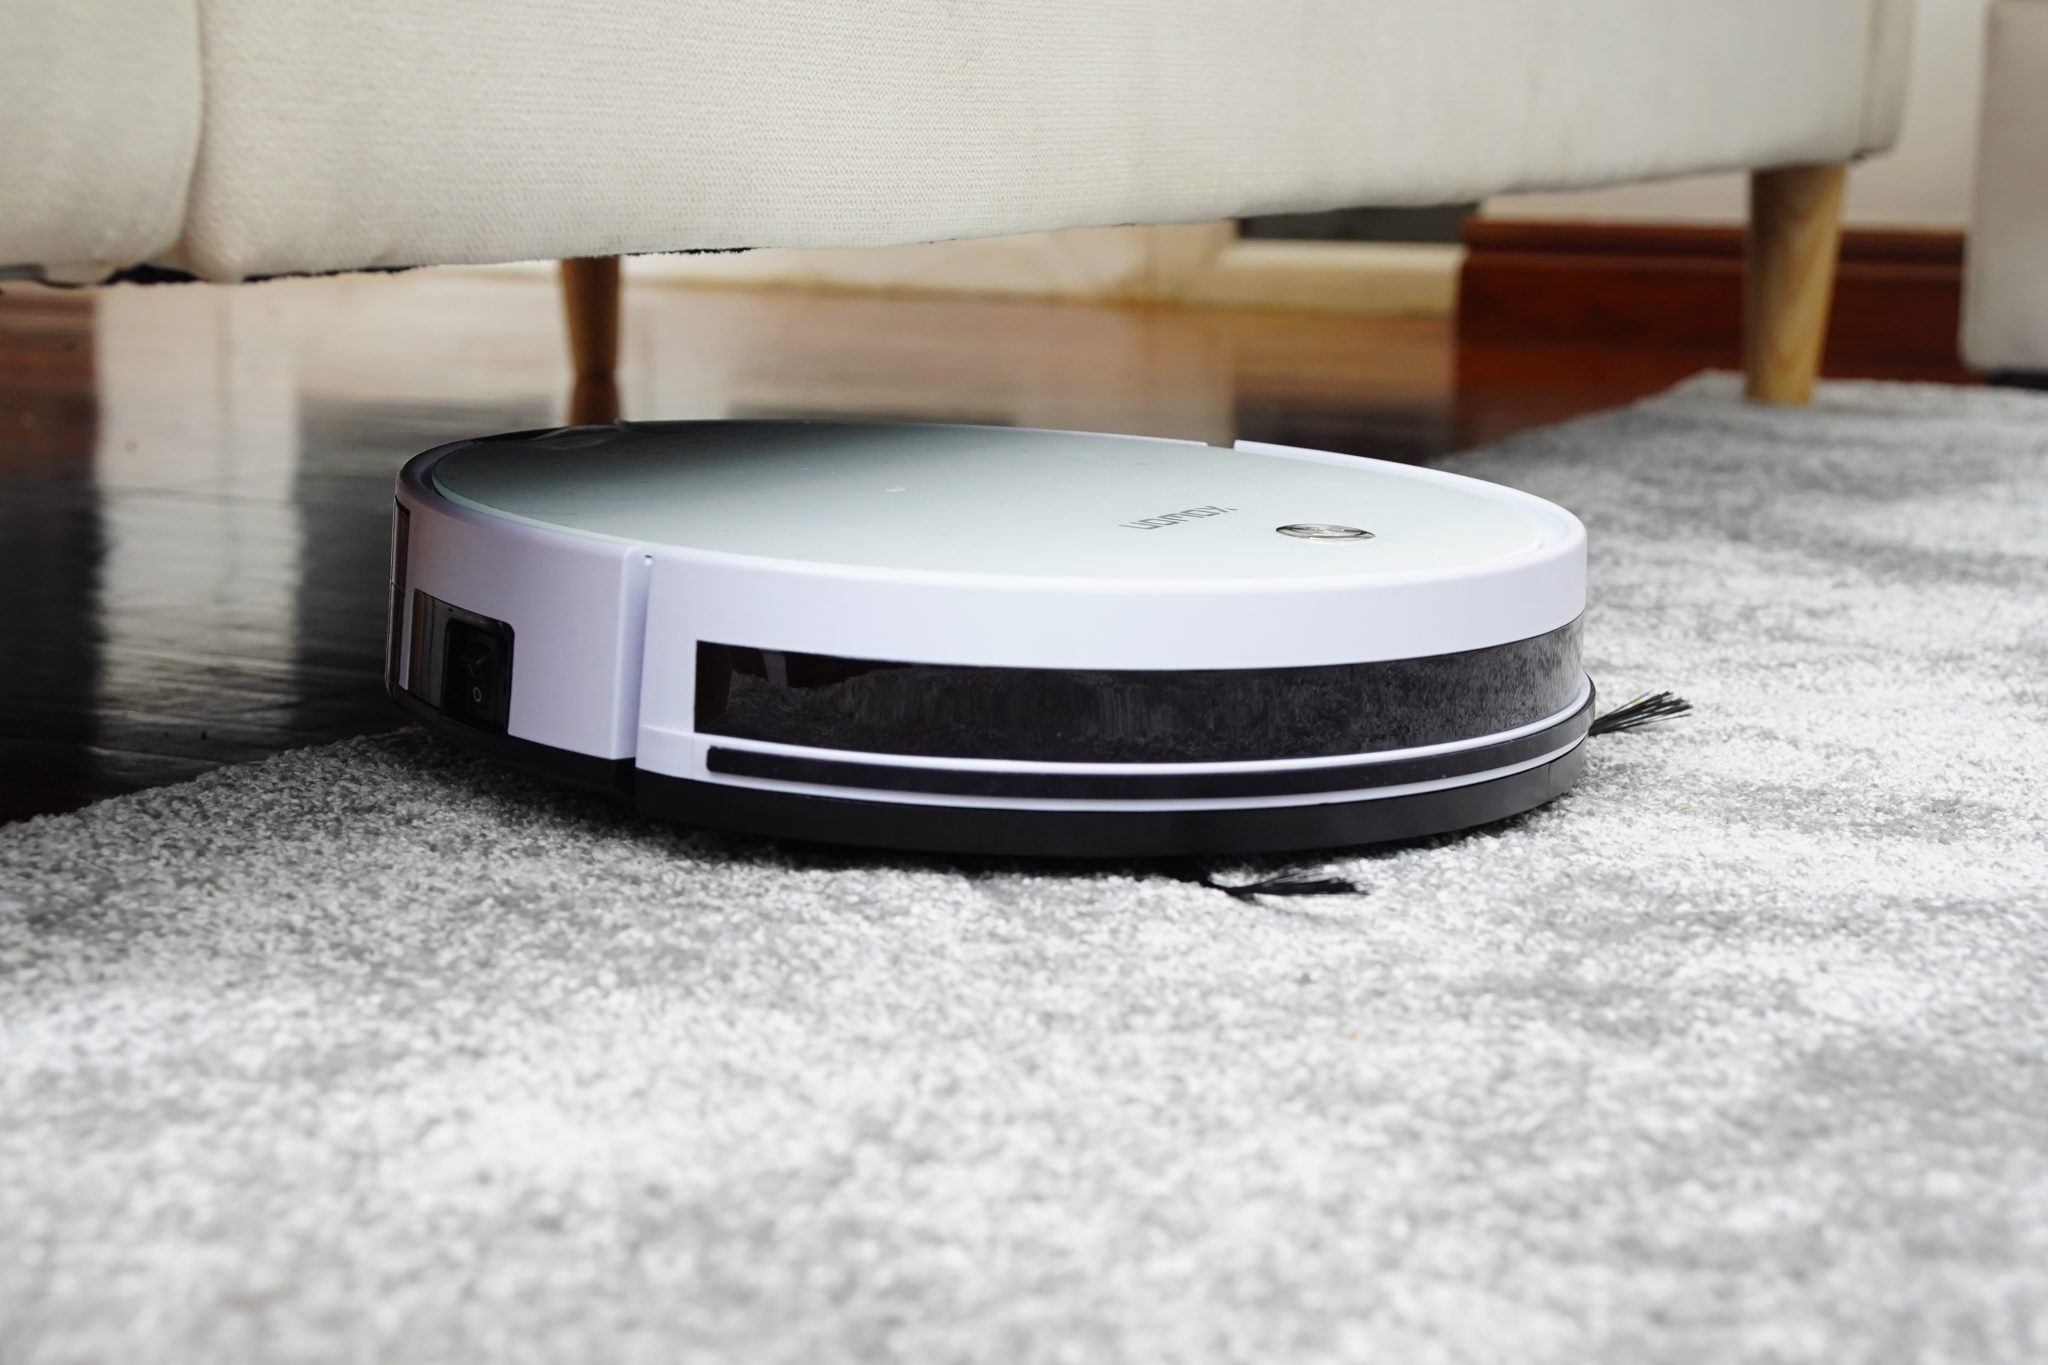 iRobot Roomba 880 vs 980